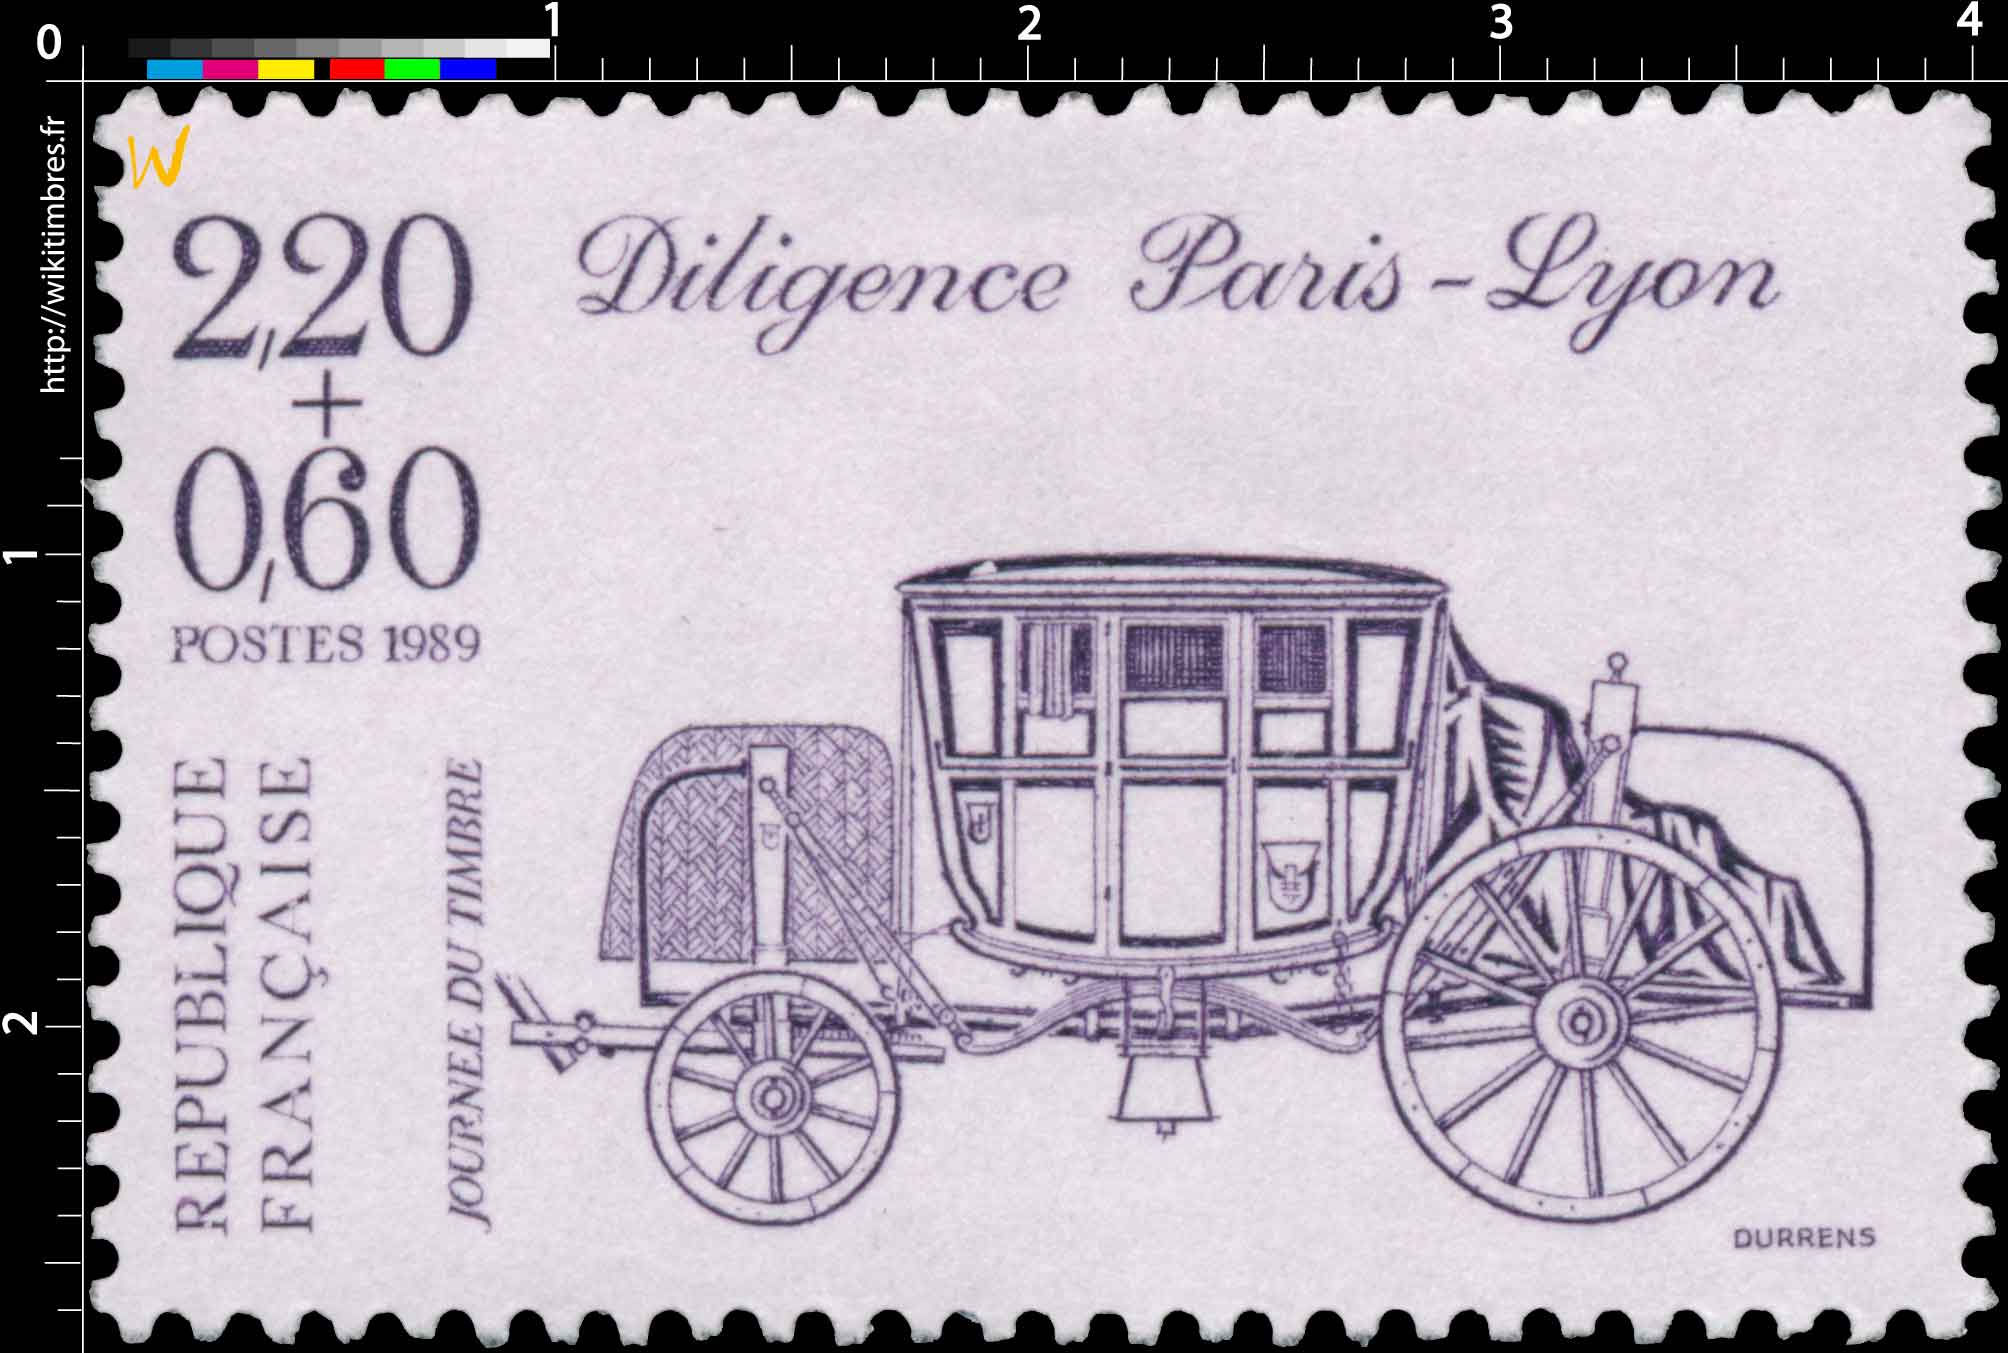 1989 JOURNÉE DU TIMBRE Diligence Paris-Lyon